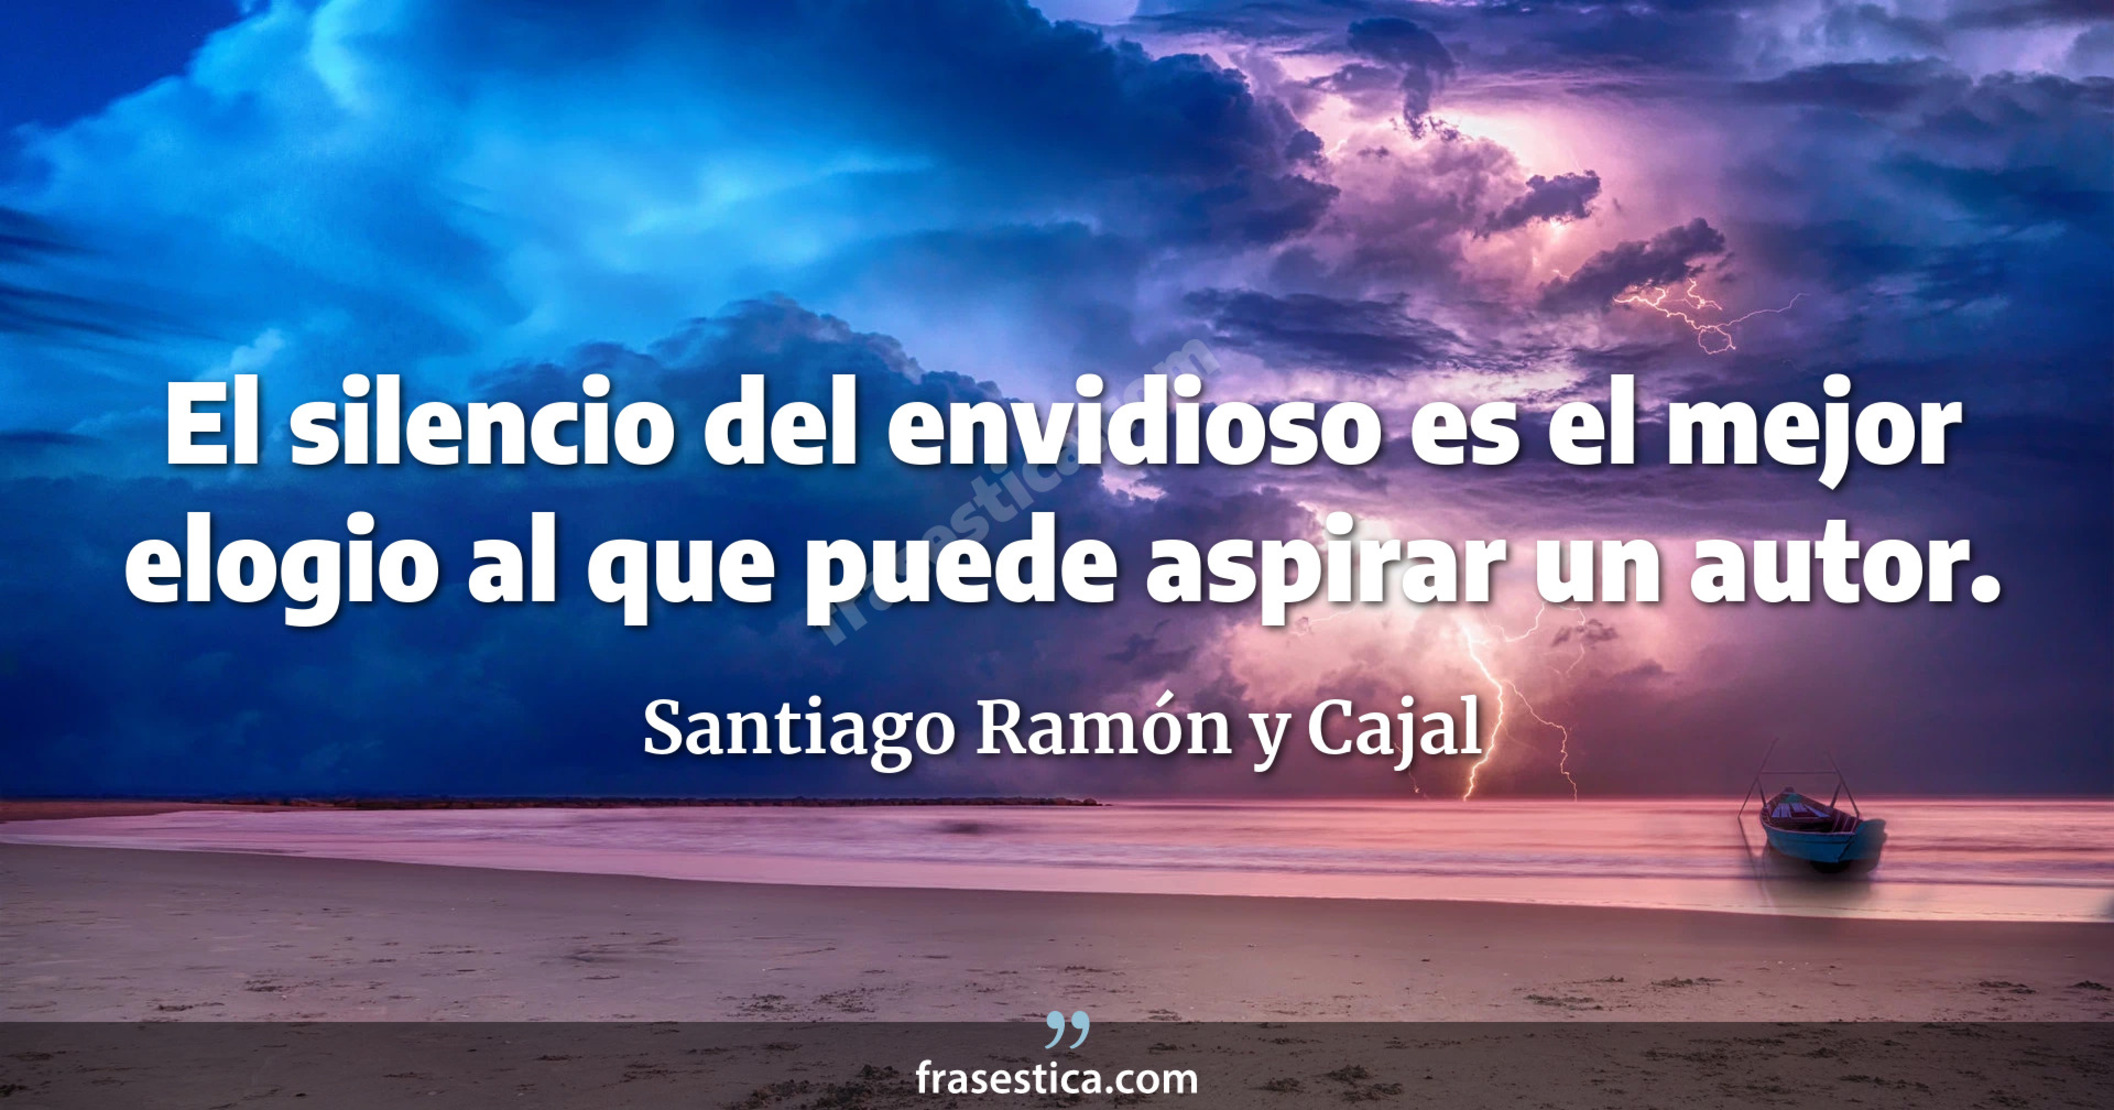 El silencio del envidioso es el mejor elogio al que puede aspirar un autor. - Santiago Ramón y Cajal